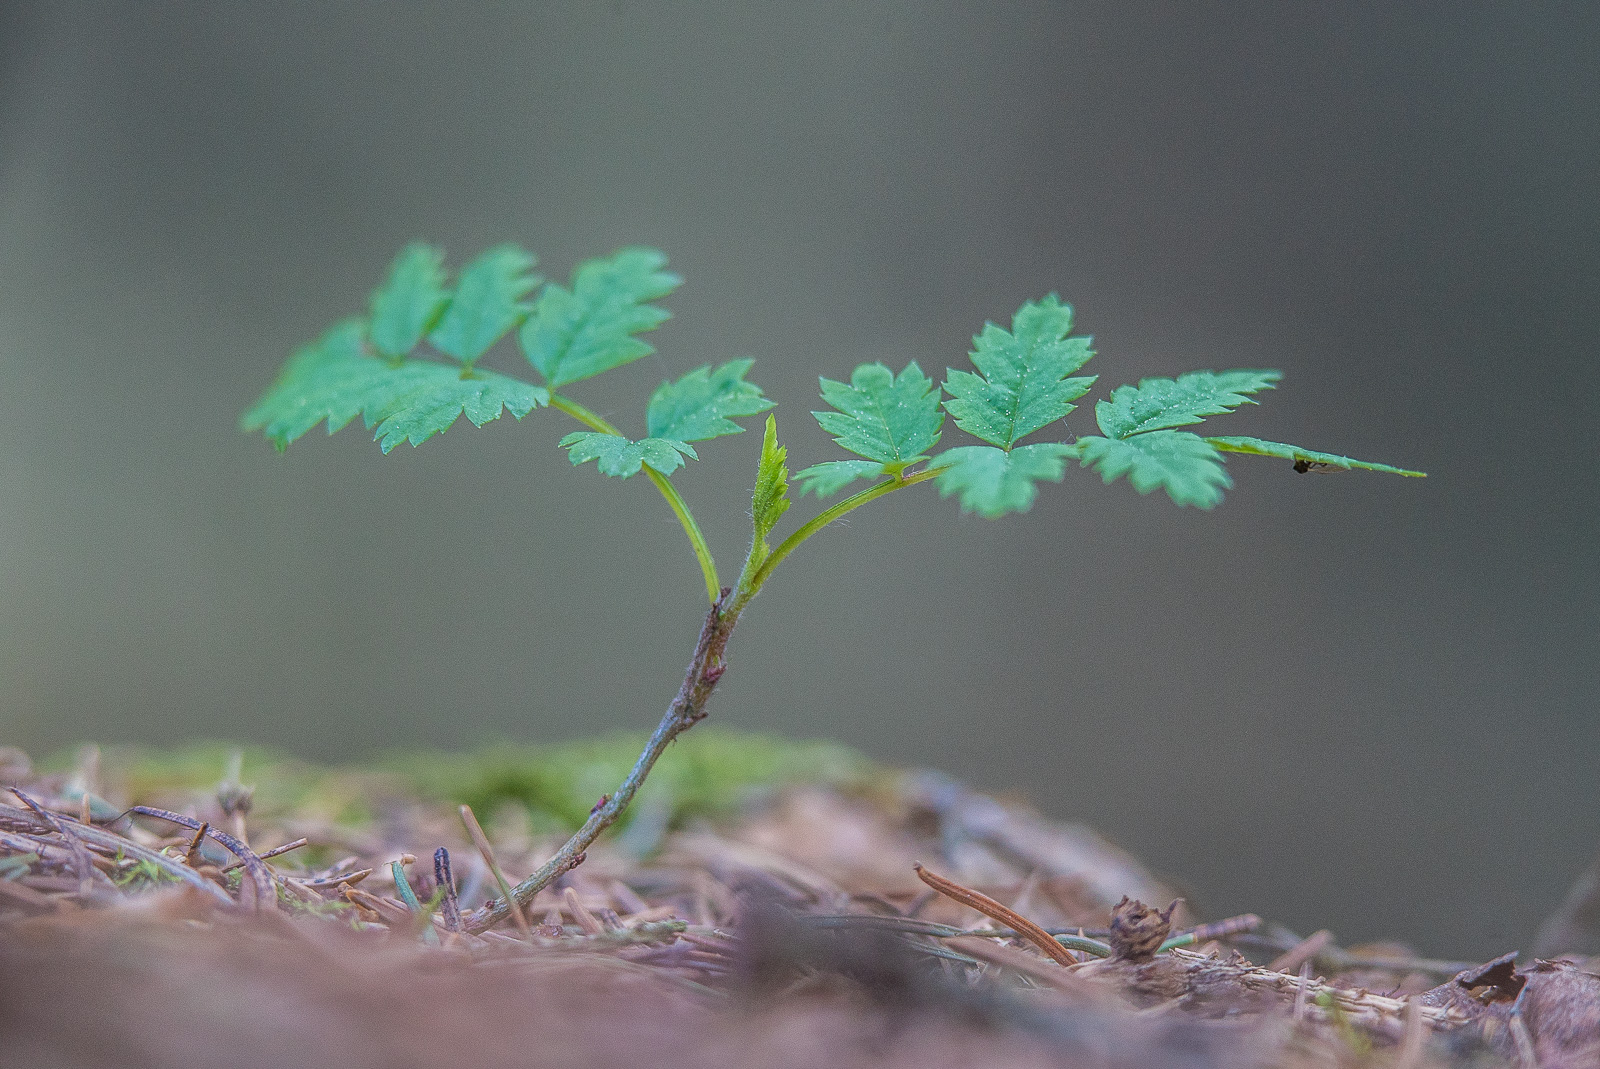 Ein sehr junger Laubbaum-Keimling sprießt aus nadelbedecktem Waldboden